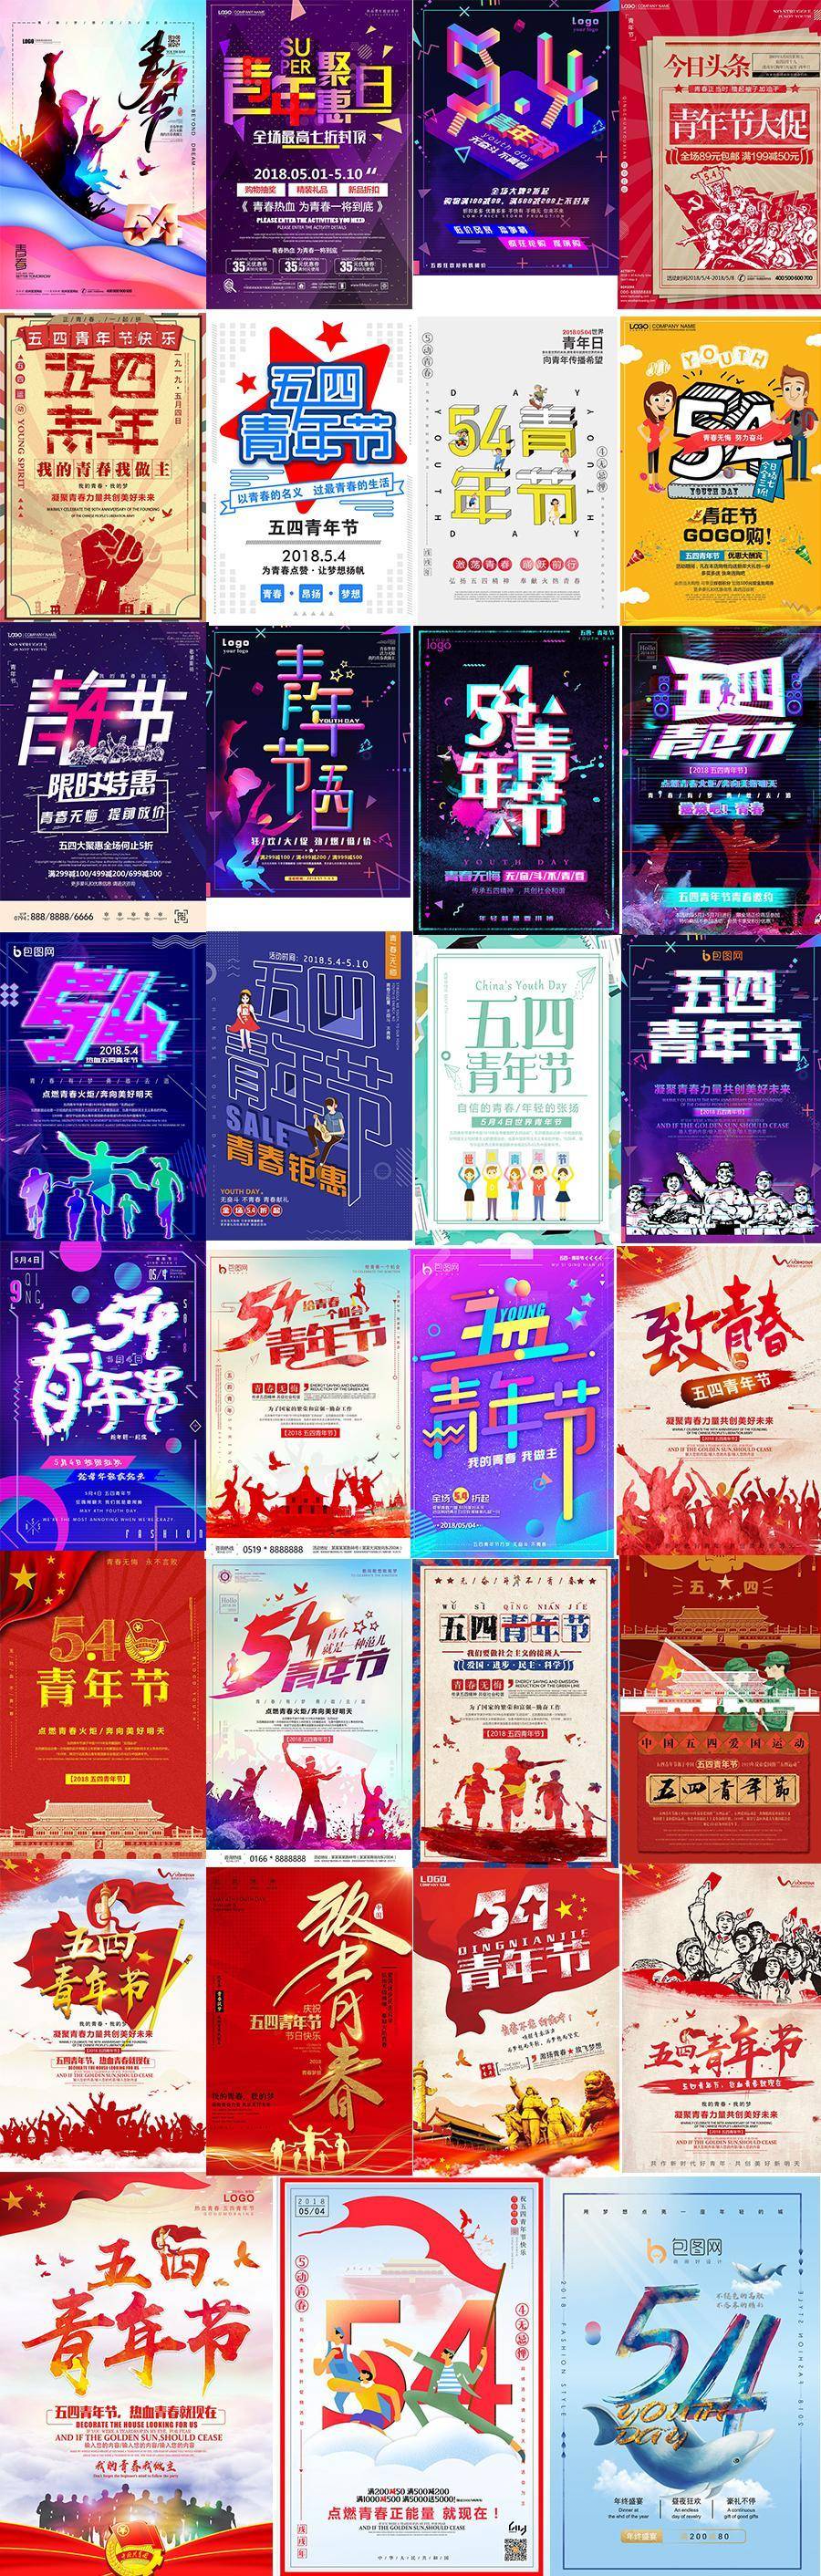 31款2019炫丽五四青年节海报青春正能量放飞梦想宣传大促PSD设计素材